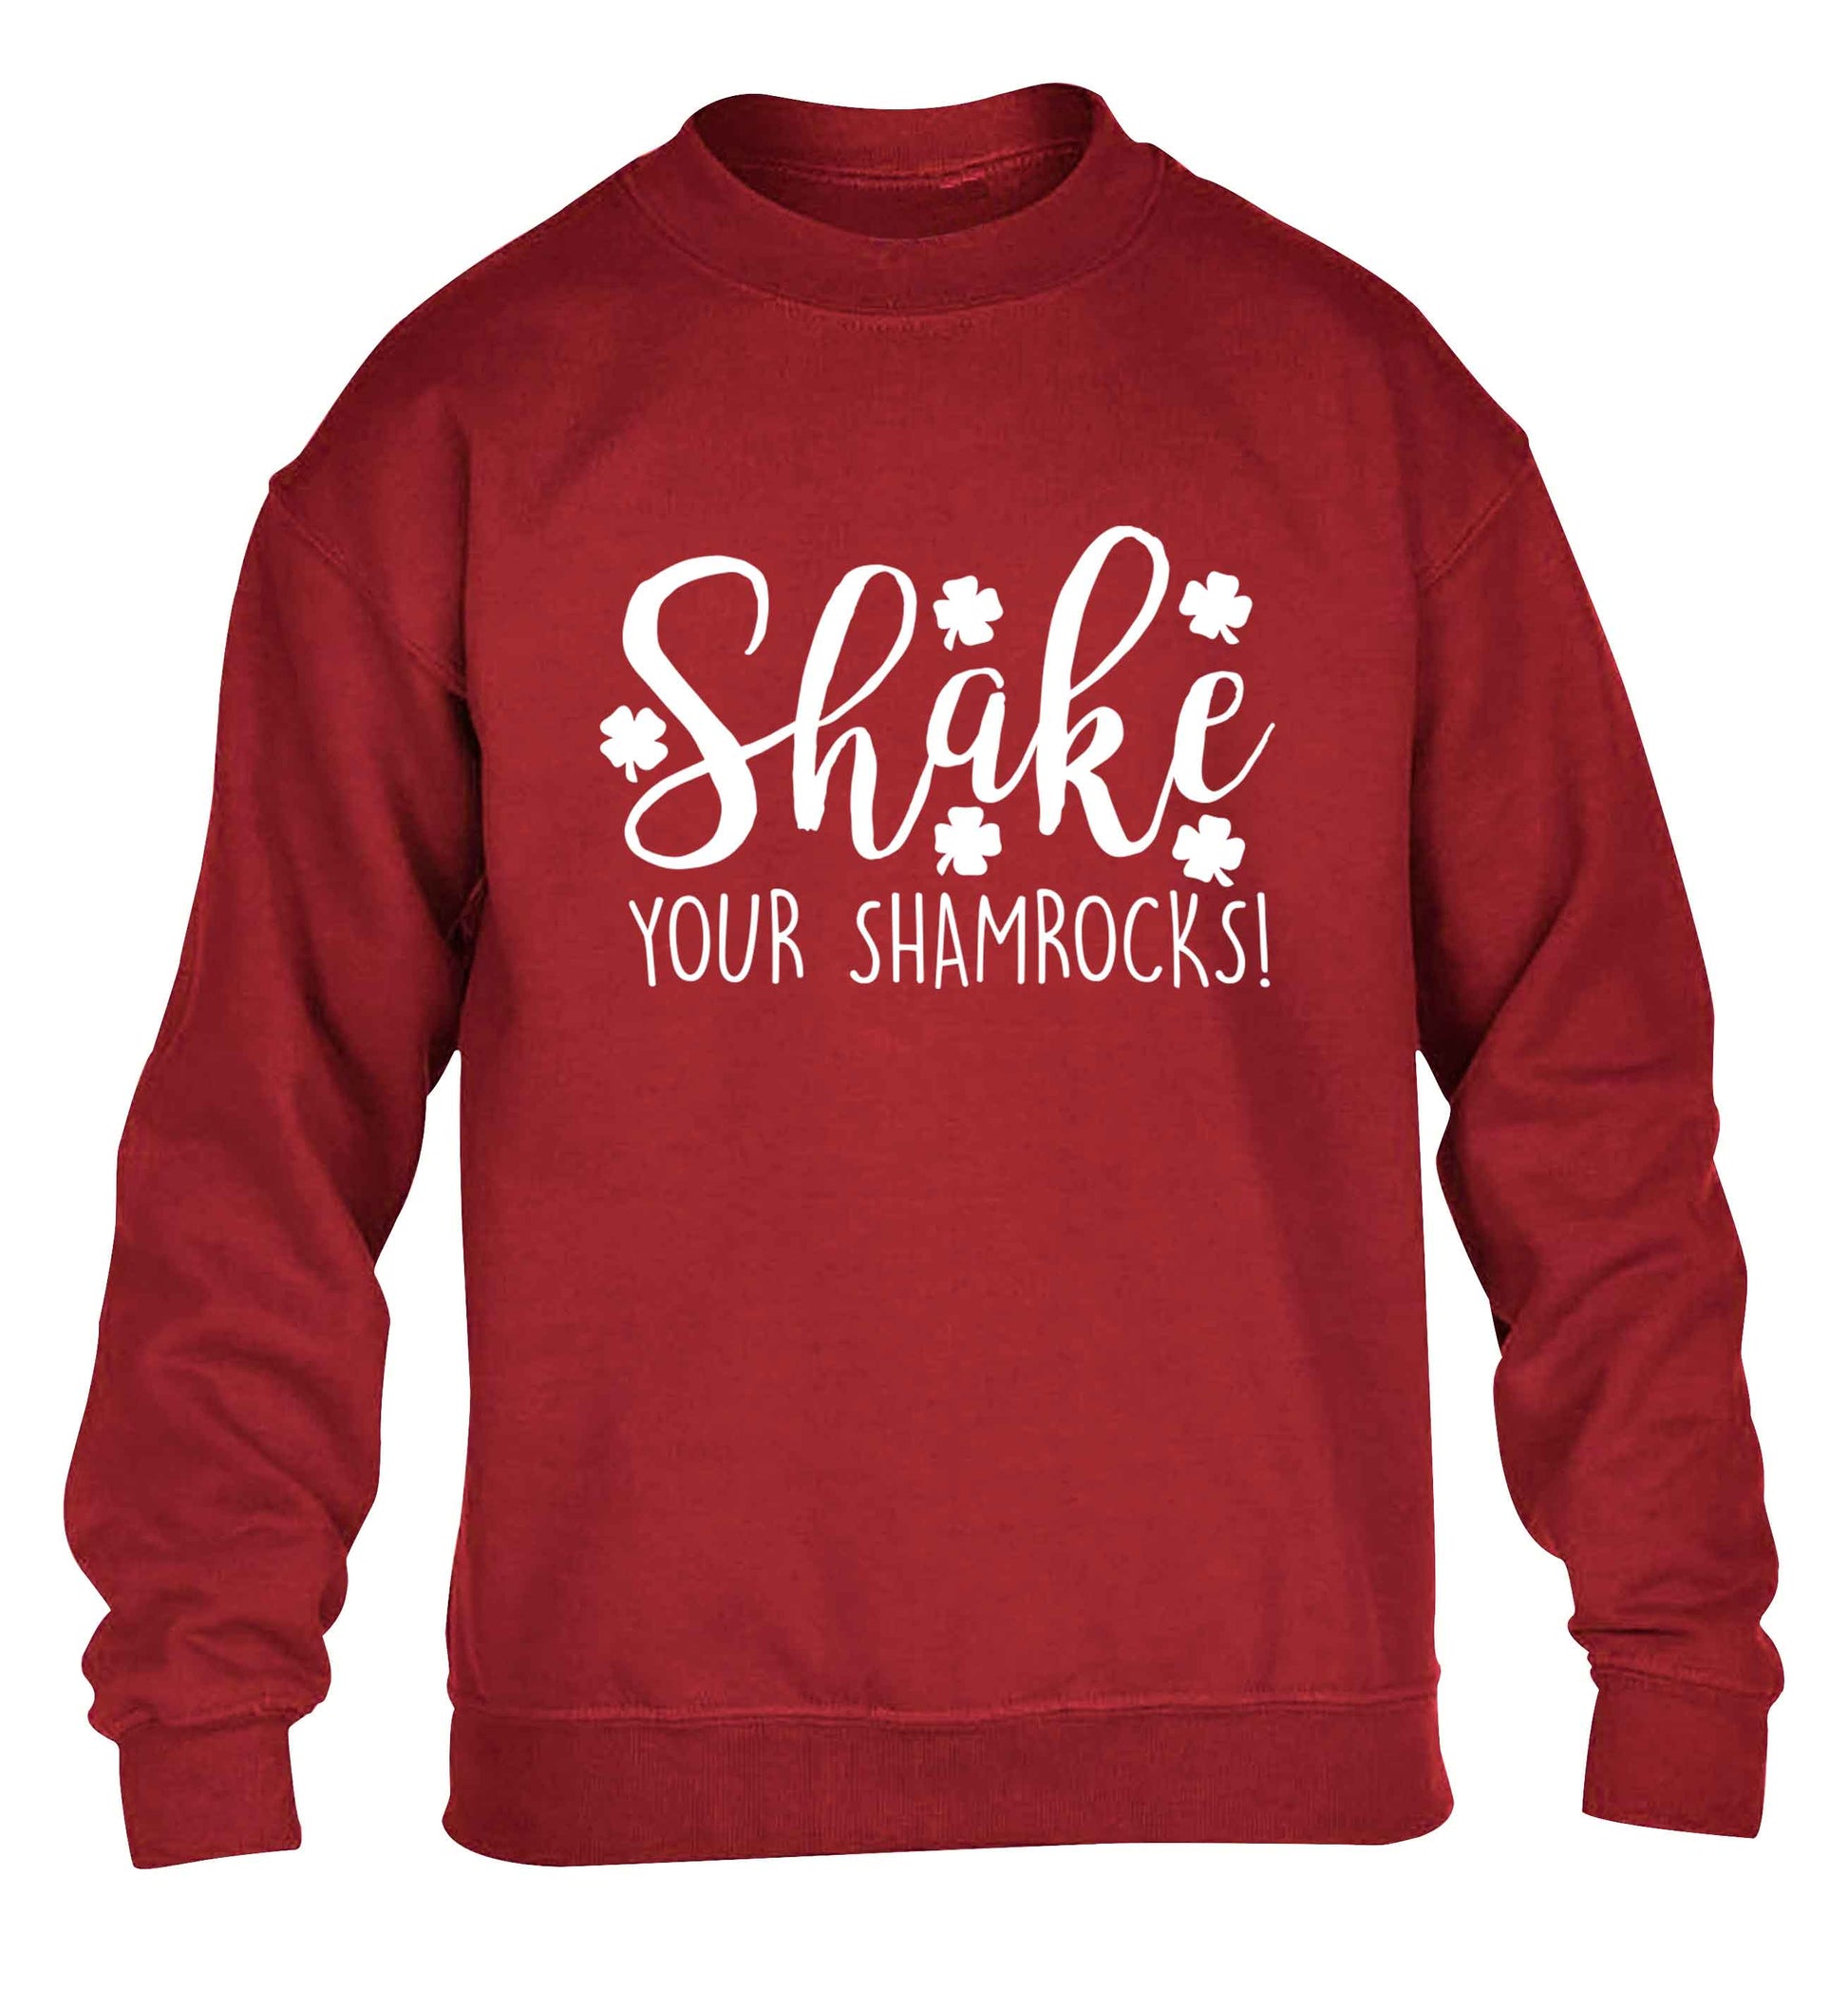 Shake your shamrocks children's grey sweater 12-13 Years